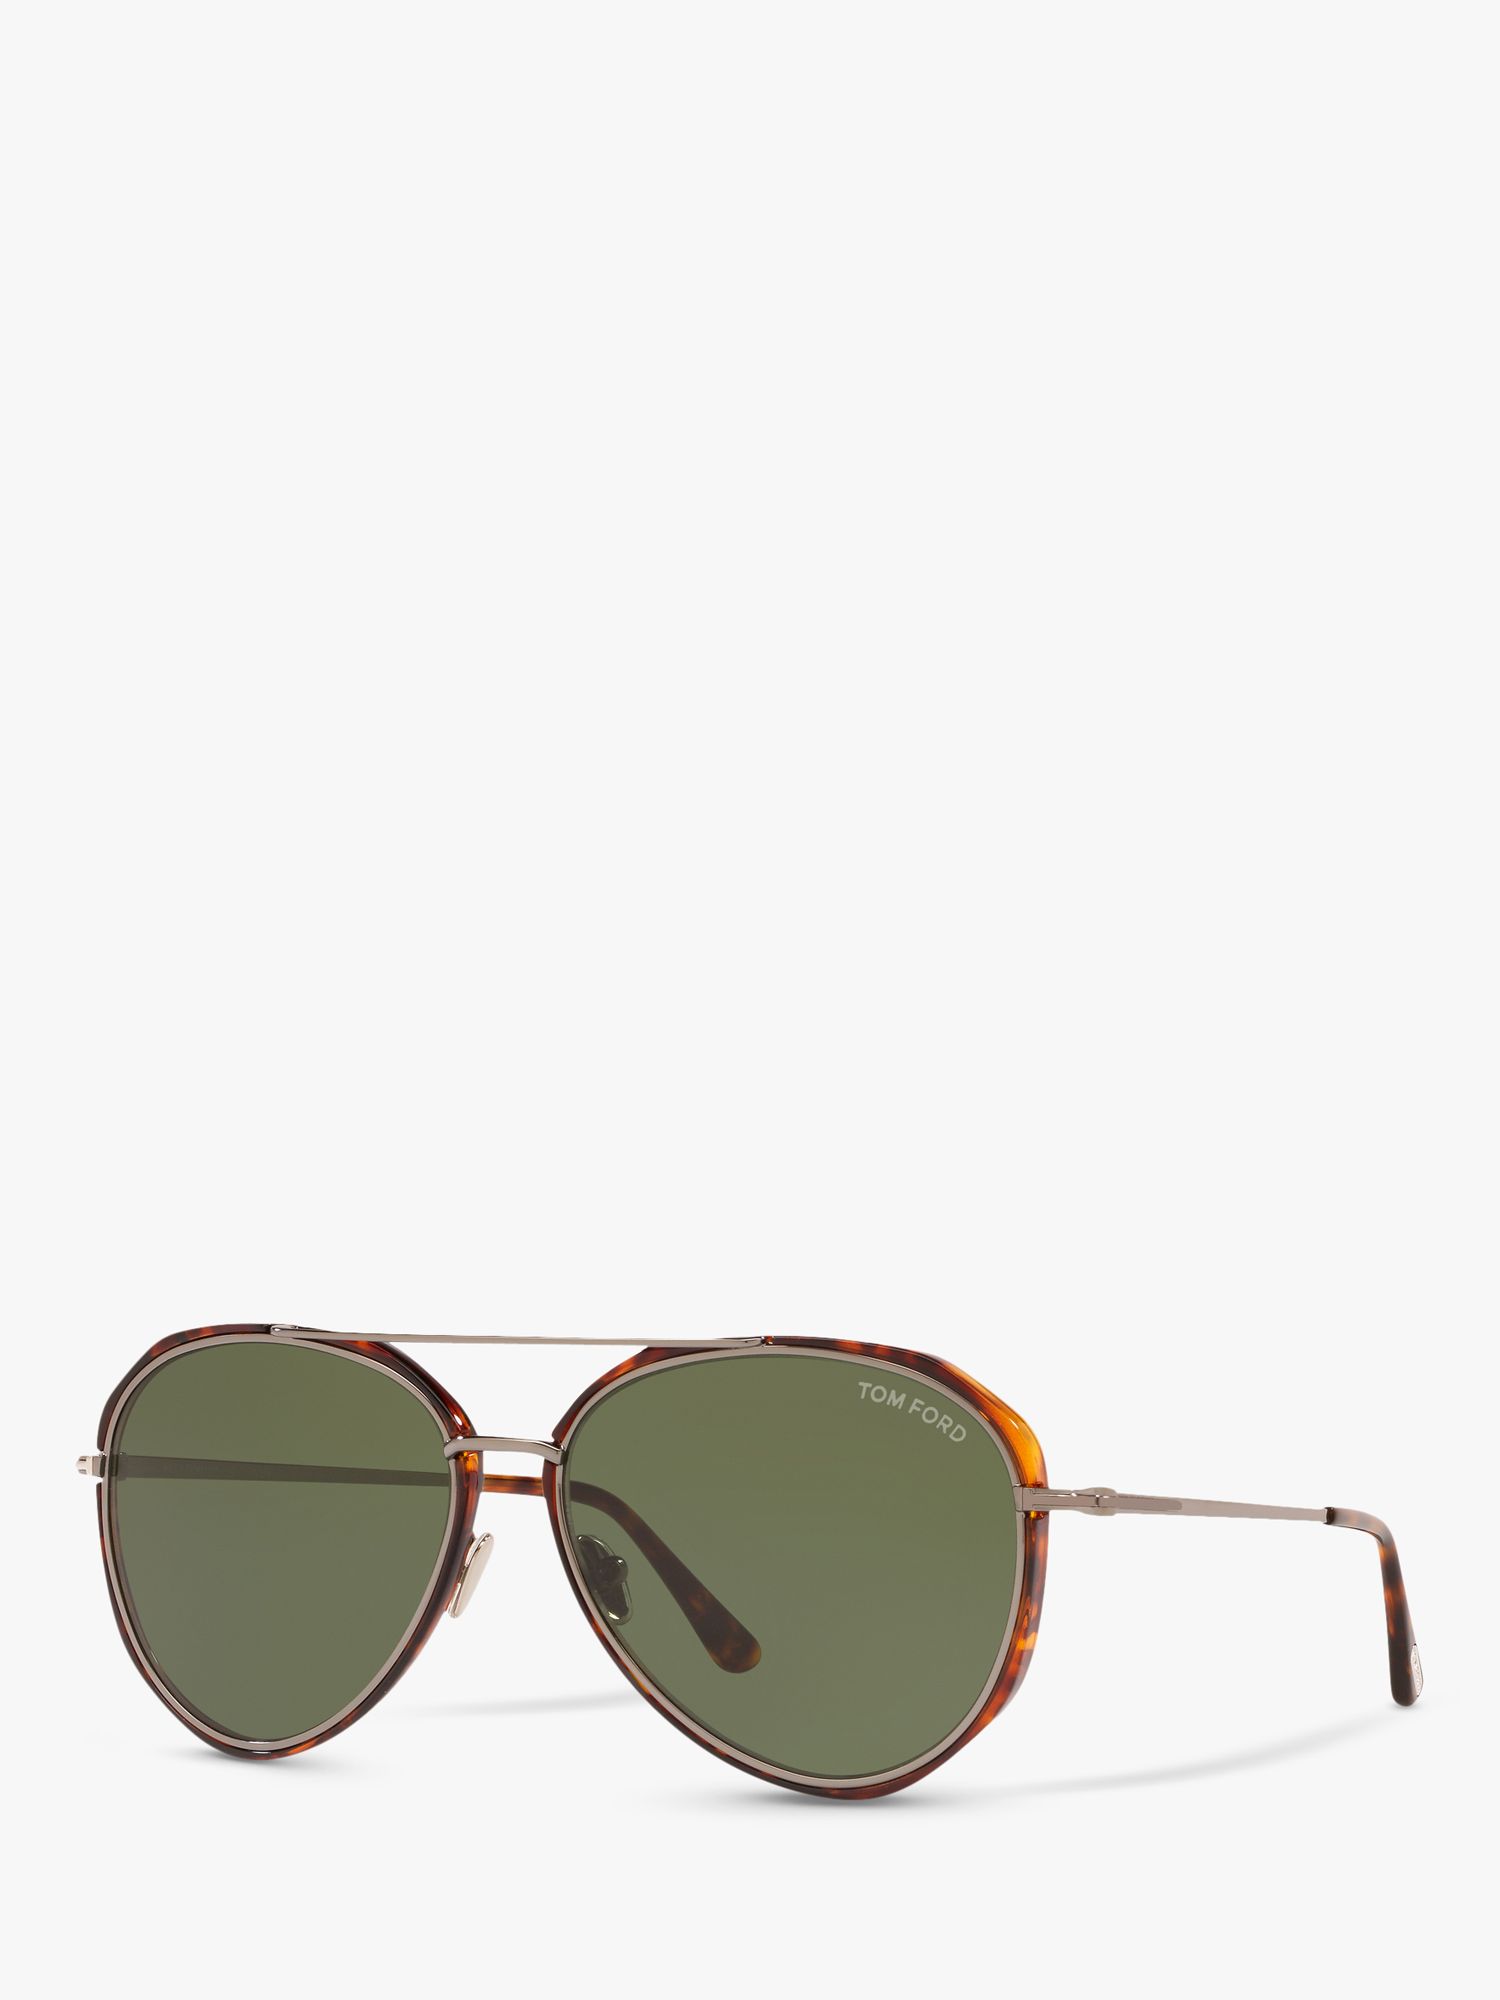 TOM FORD FT0749 Men's Vittorio Aviator Sunglasses